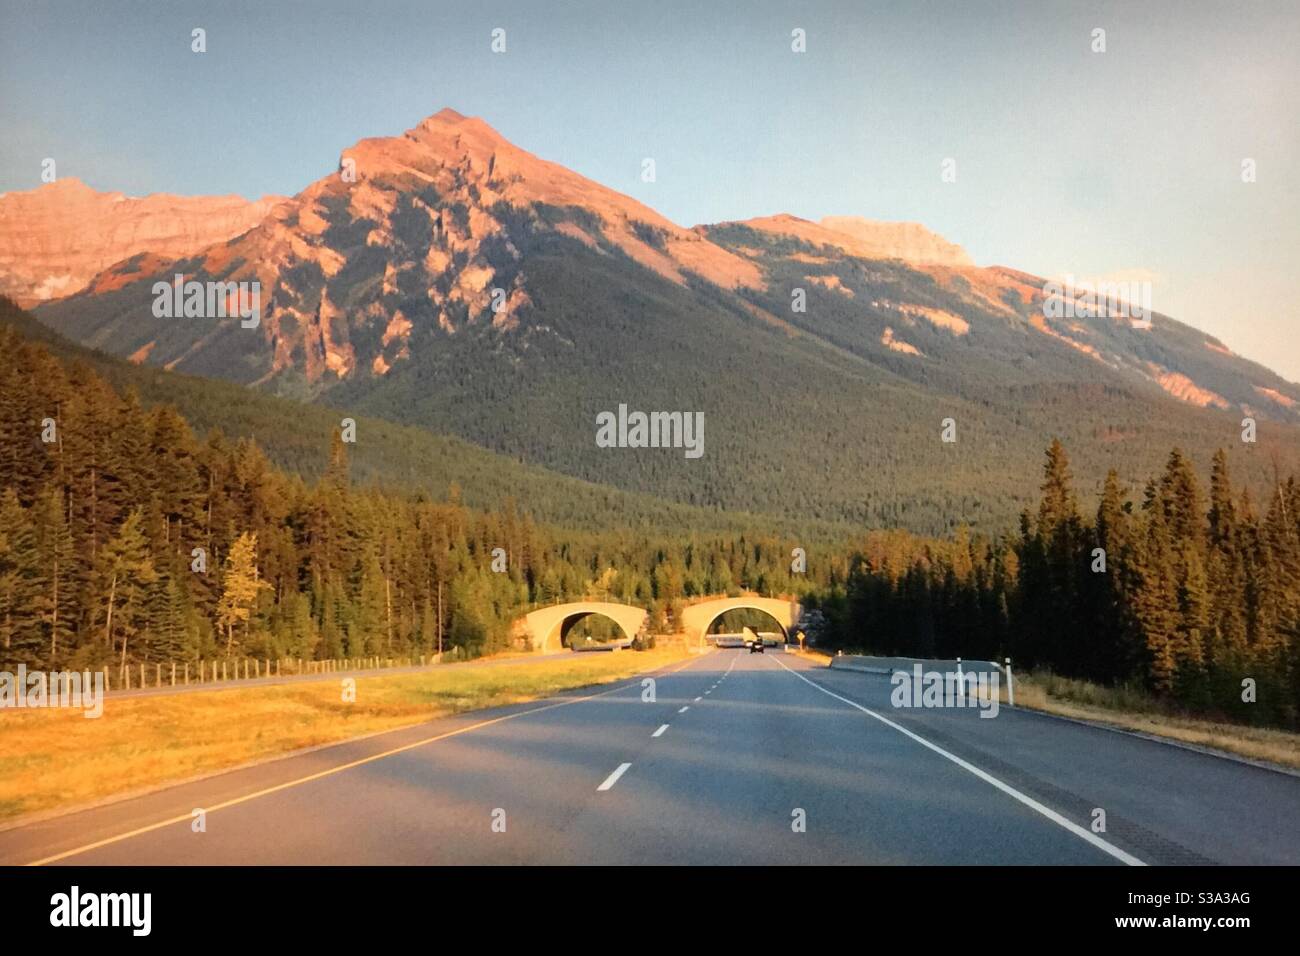 Alberta Bound, TransCanada Highway, cavalcavia animali, attraversamento della fauna selvatica, Banff National Park, Canadian Rockies, montagne, foresta, natura selvaggia Foto Stock